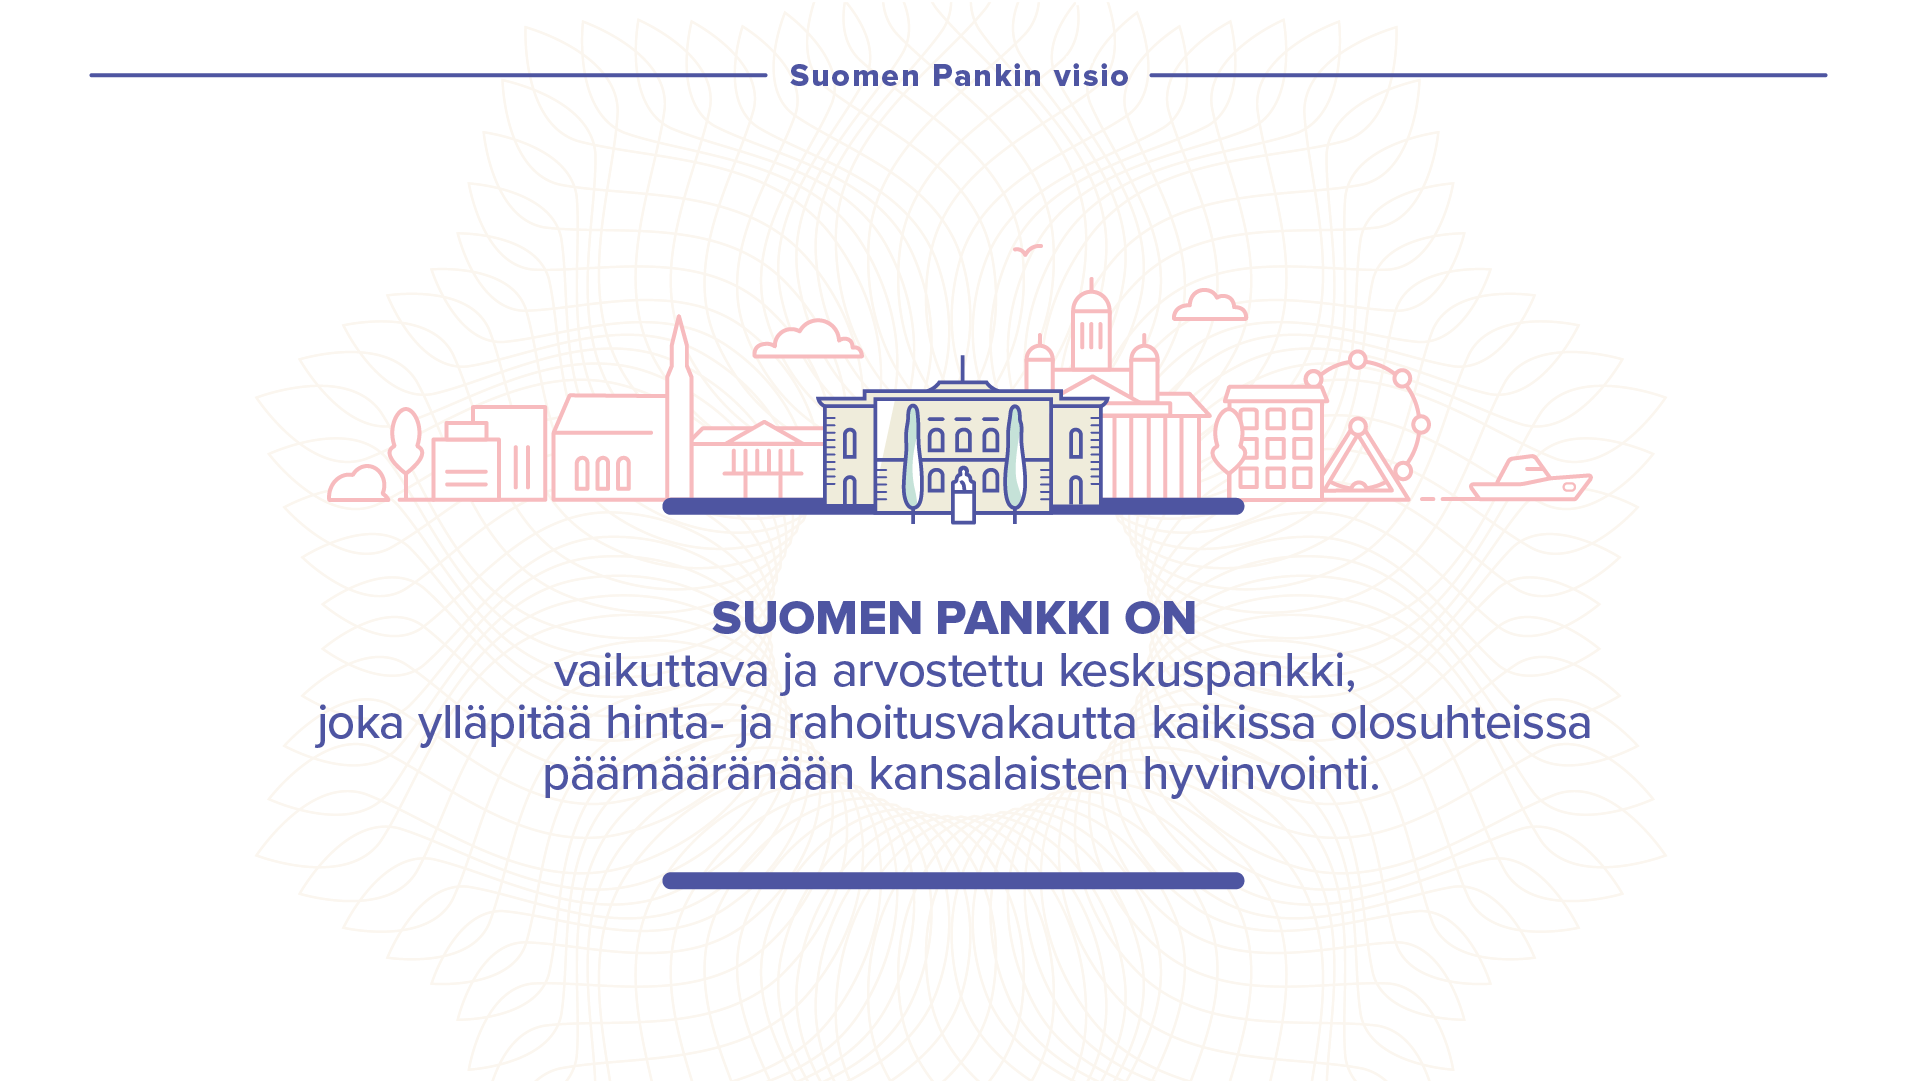 Suomen Pankin visio